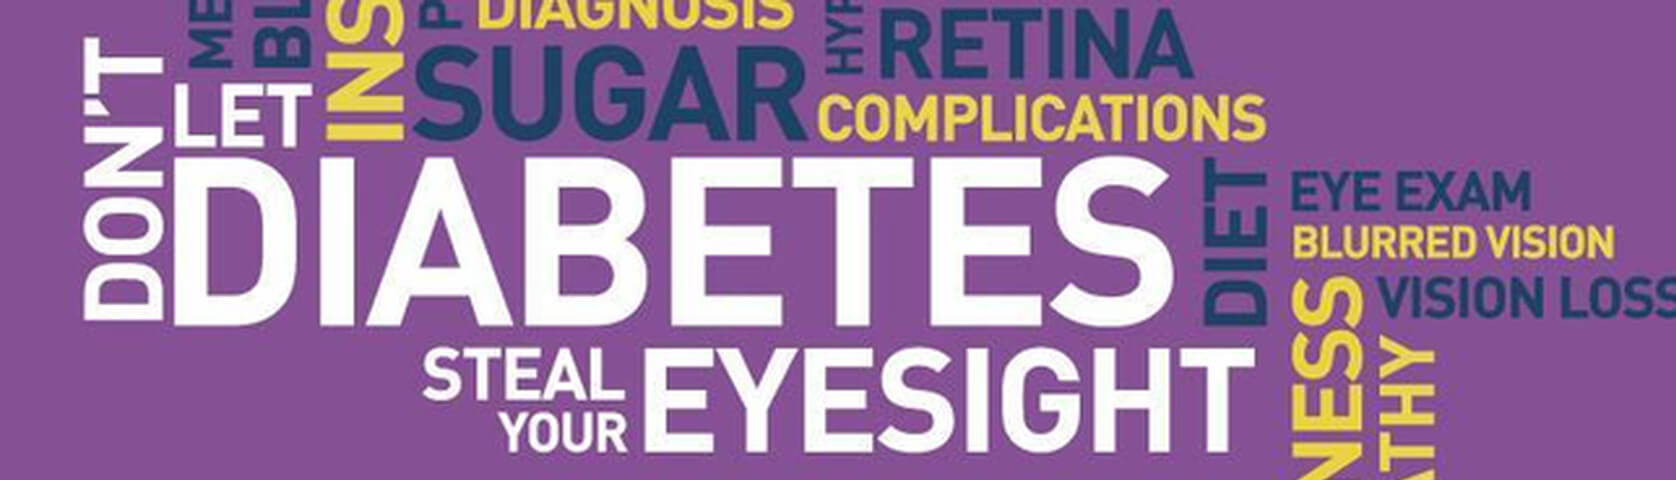 1diabetes awareness word cloud fb cover